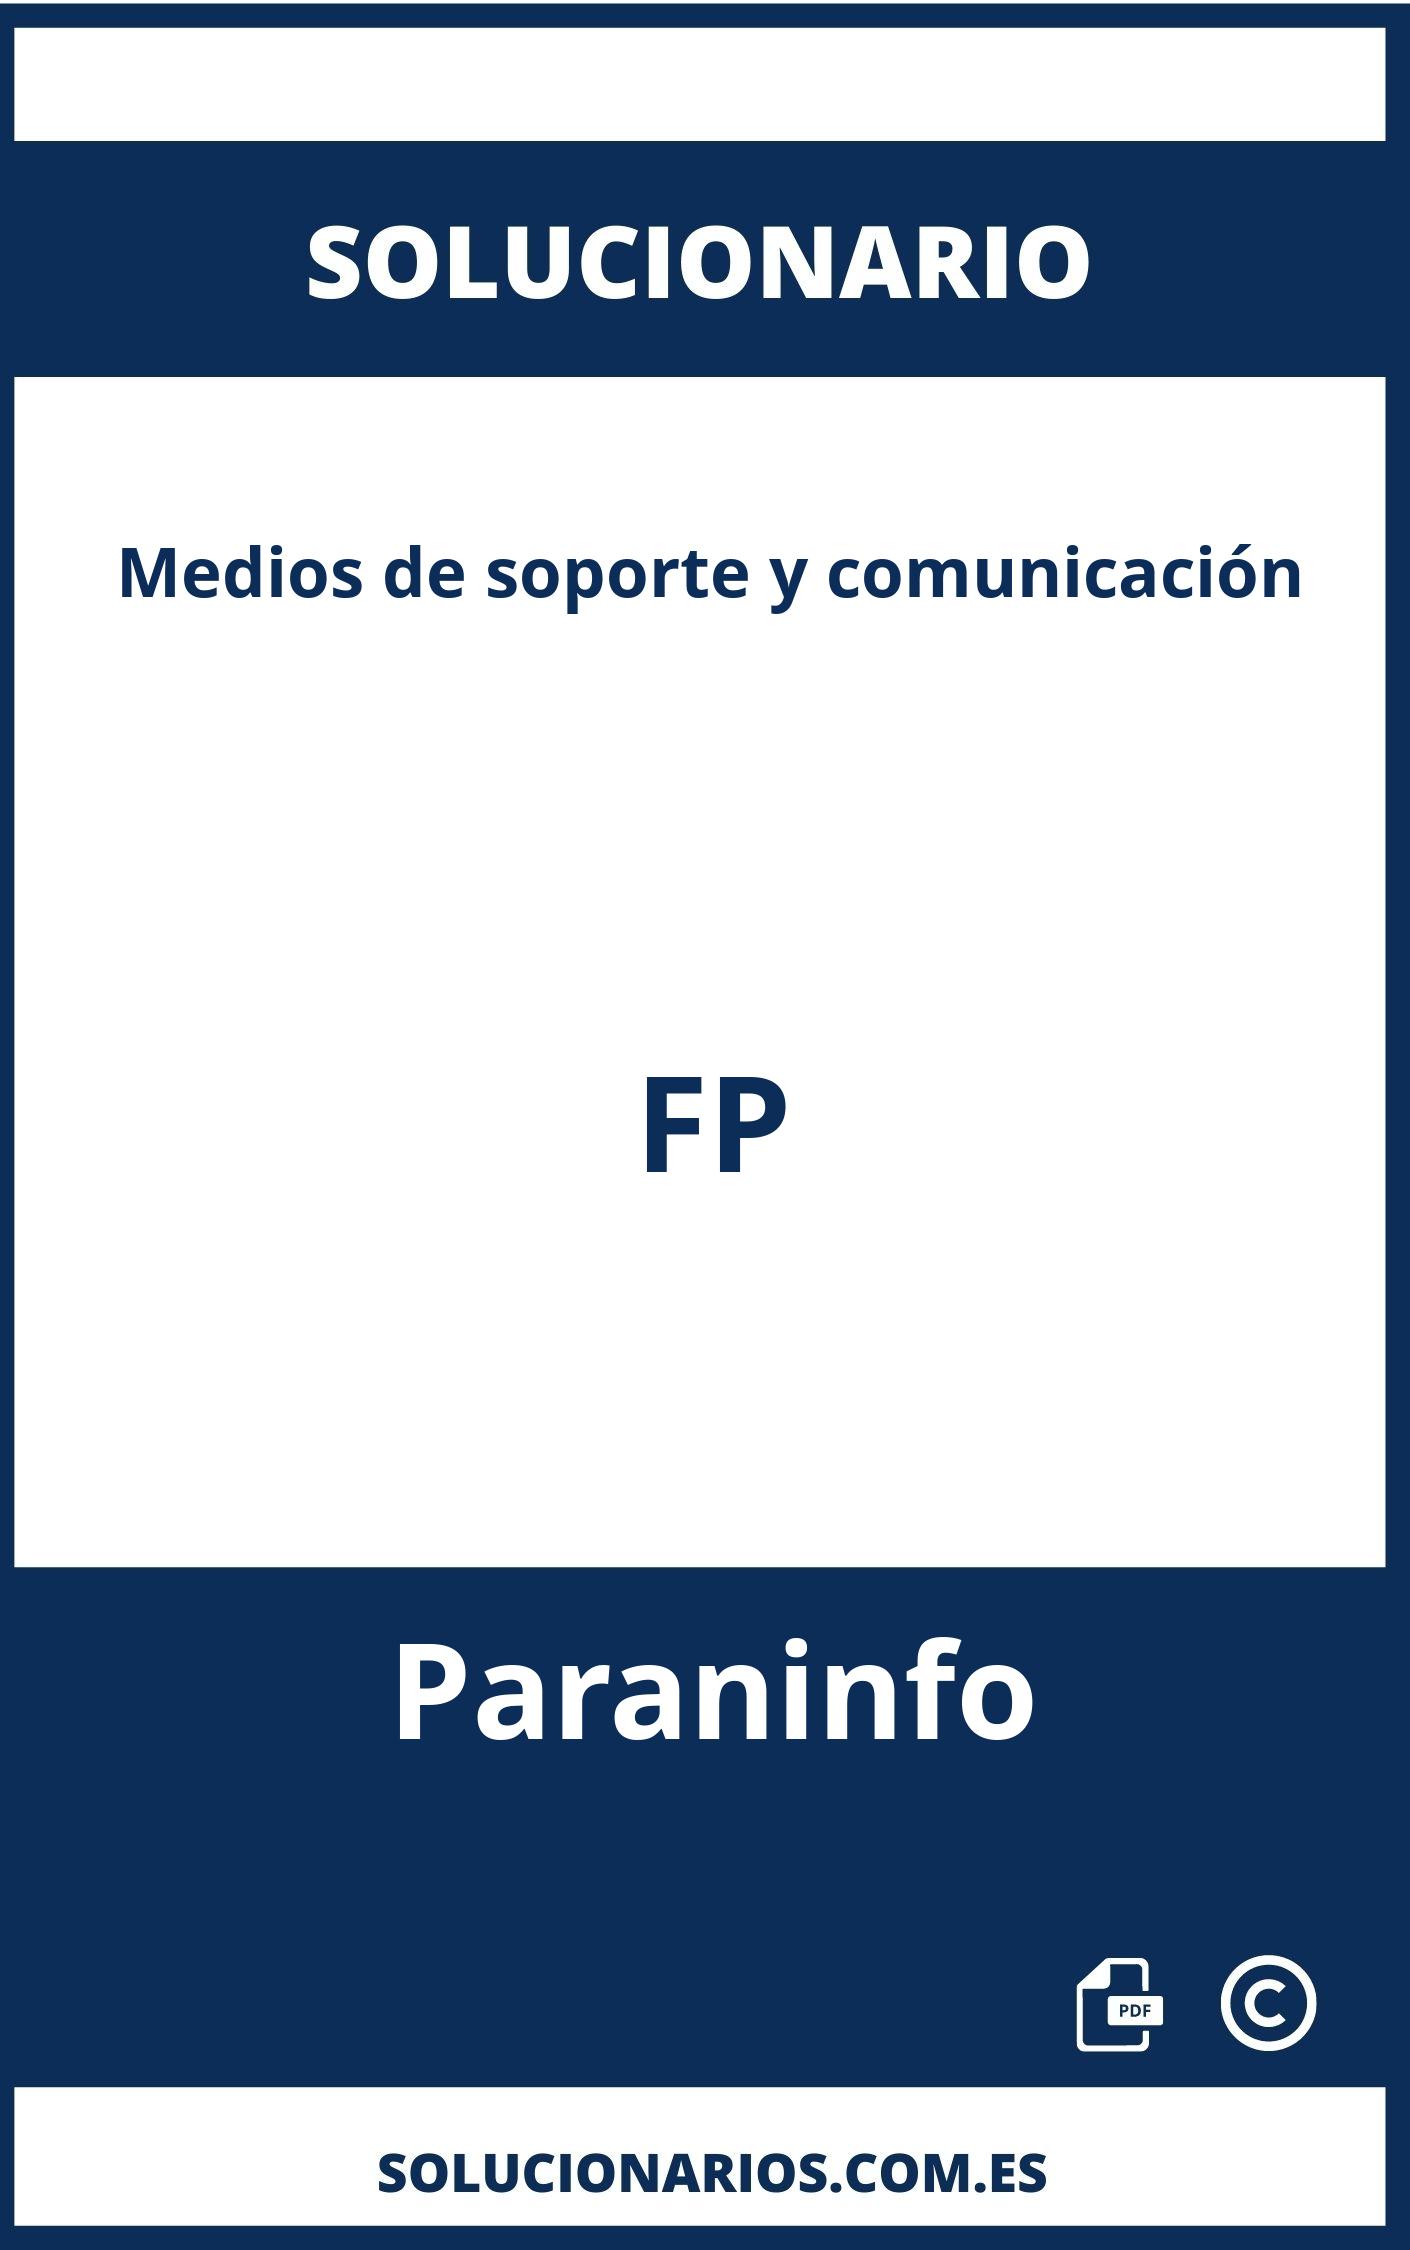 Solucionario Medios de soporte y comunicación FP Paraninfo